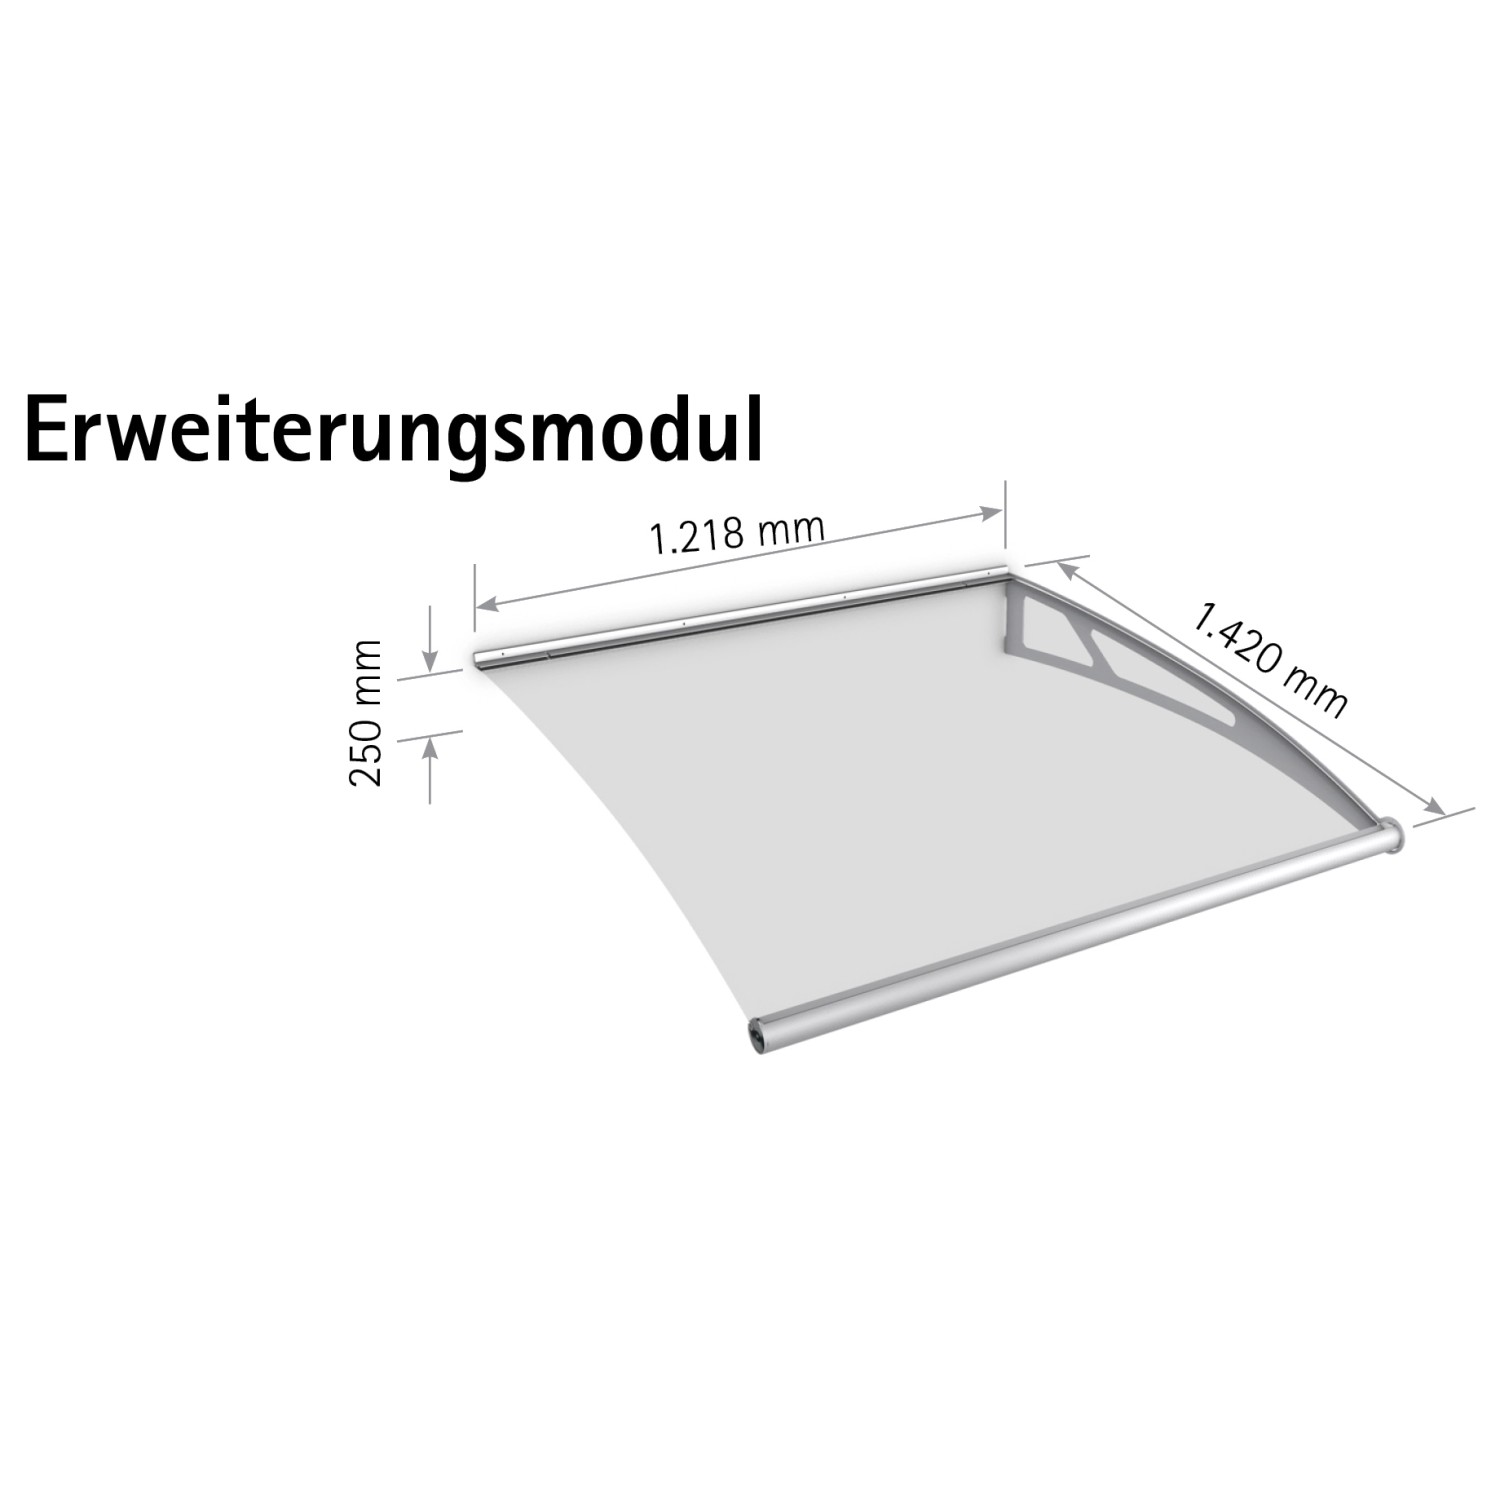 Pultbogenvordach LT-Line XL Erweiterungsmodul V2A/Klar 25 x 121,8 x 142 cm von Schulte